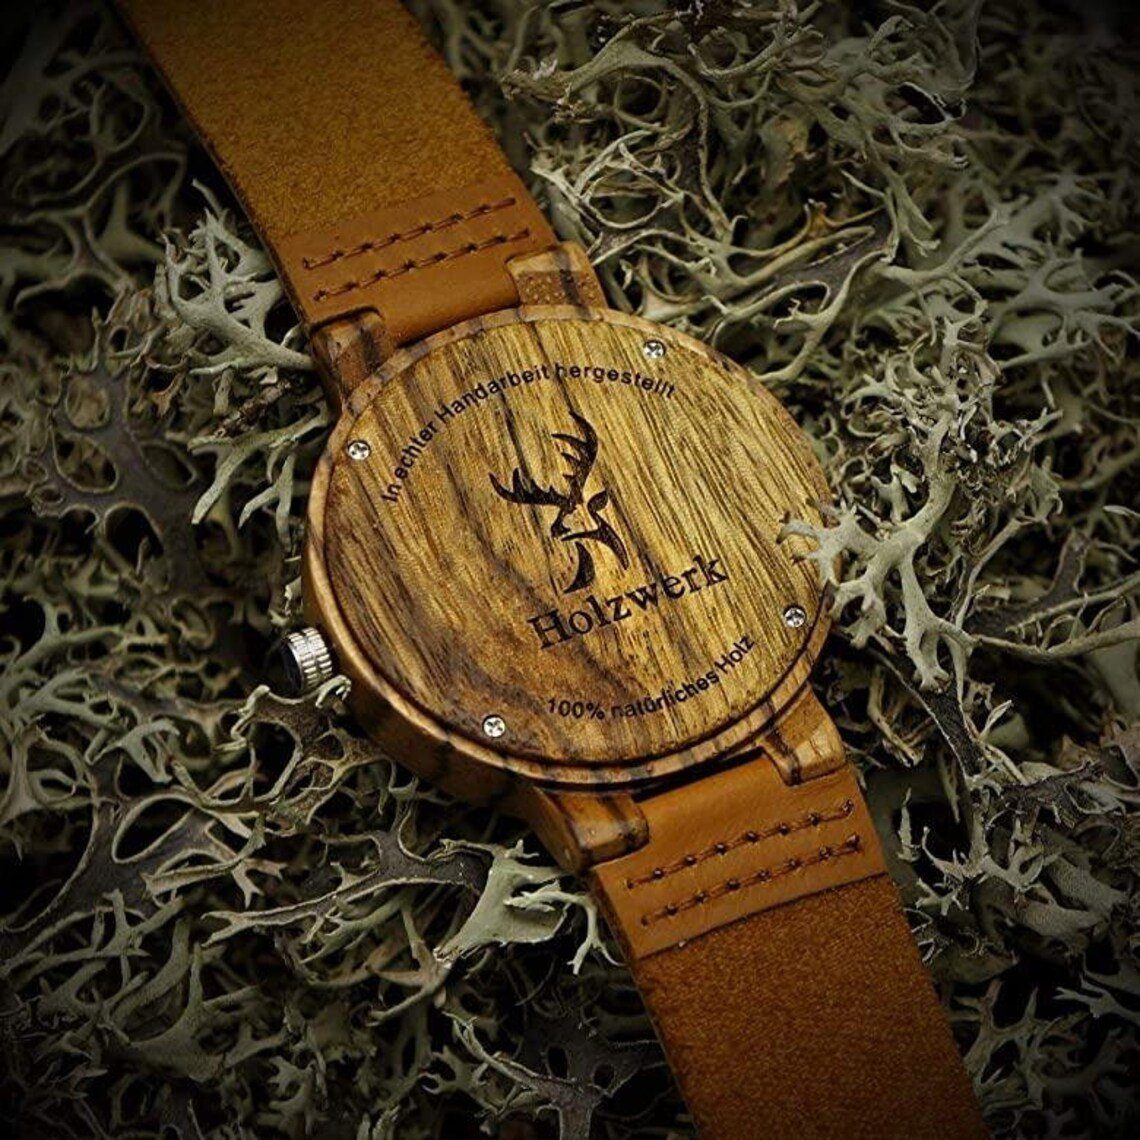 Holzwerk Damen grün Armband Leder BURGAU braun, & Uhr, Quarzuhr und Holz Herren